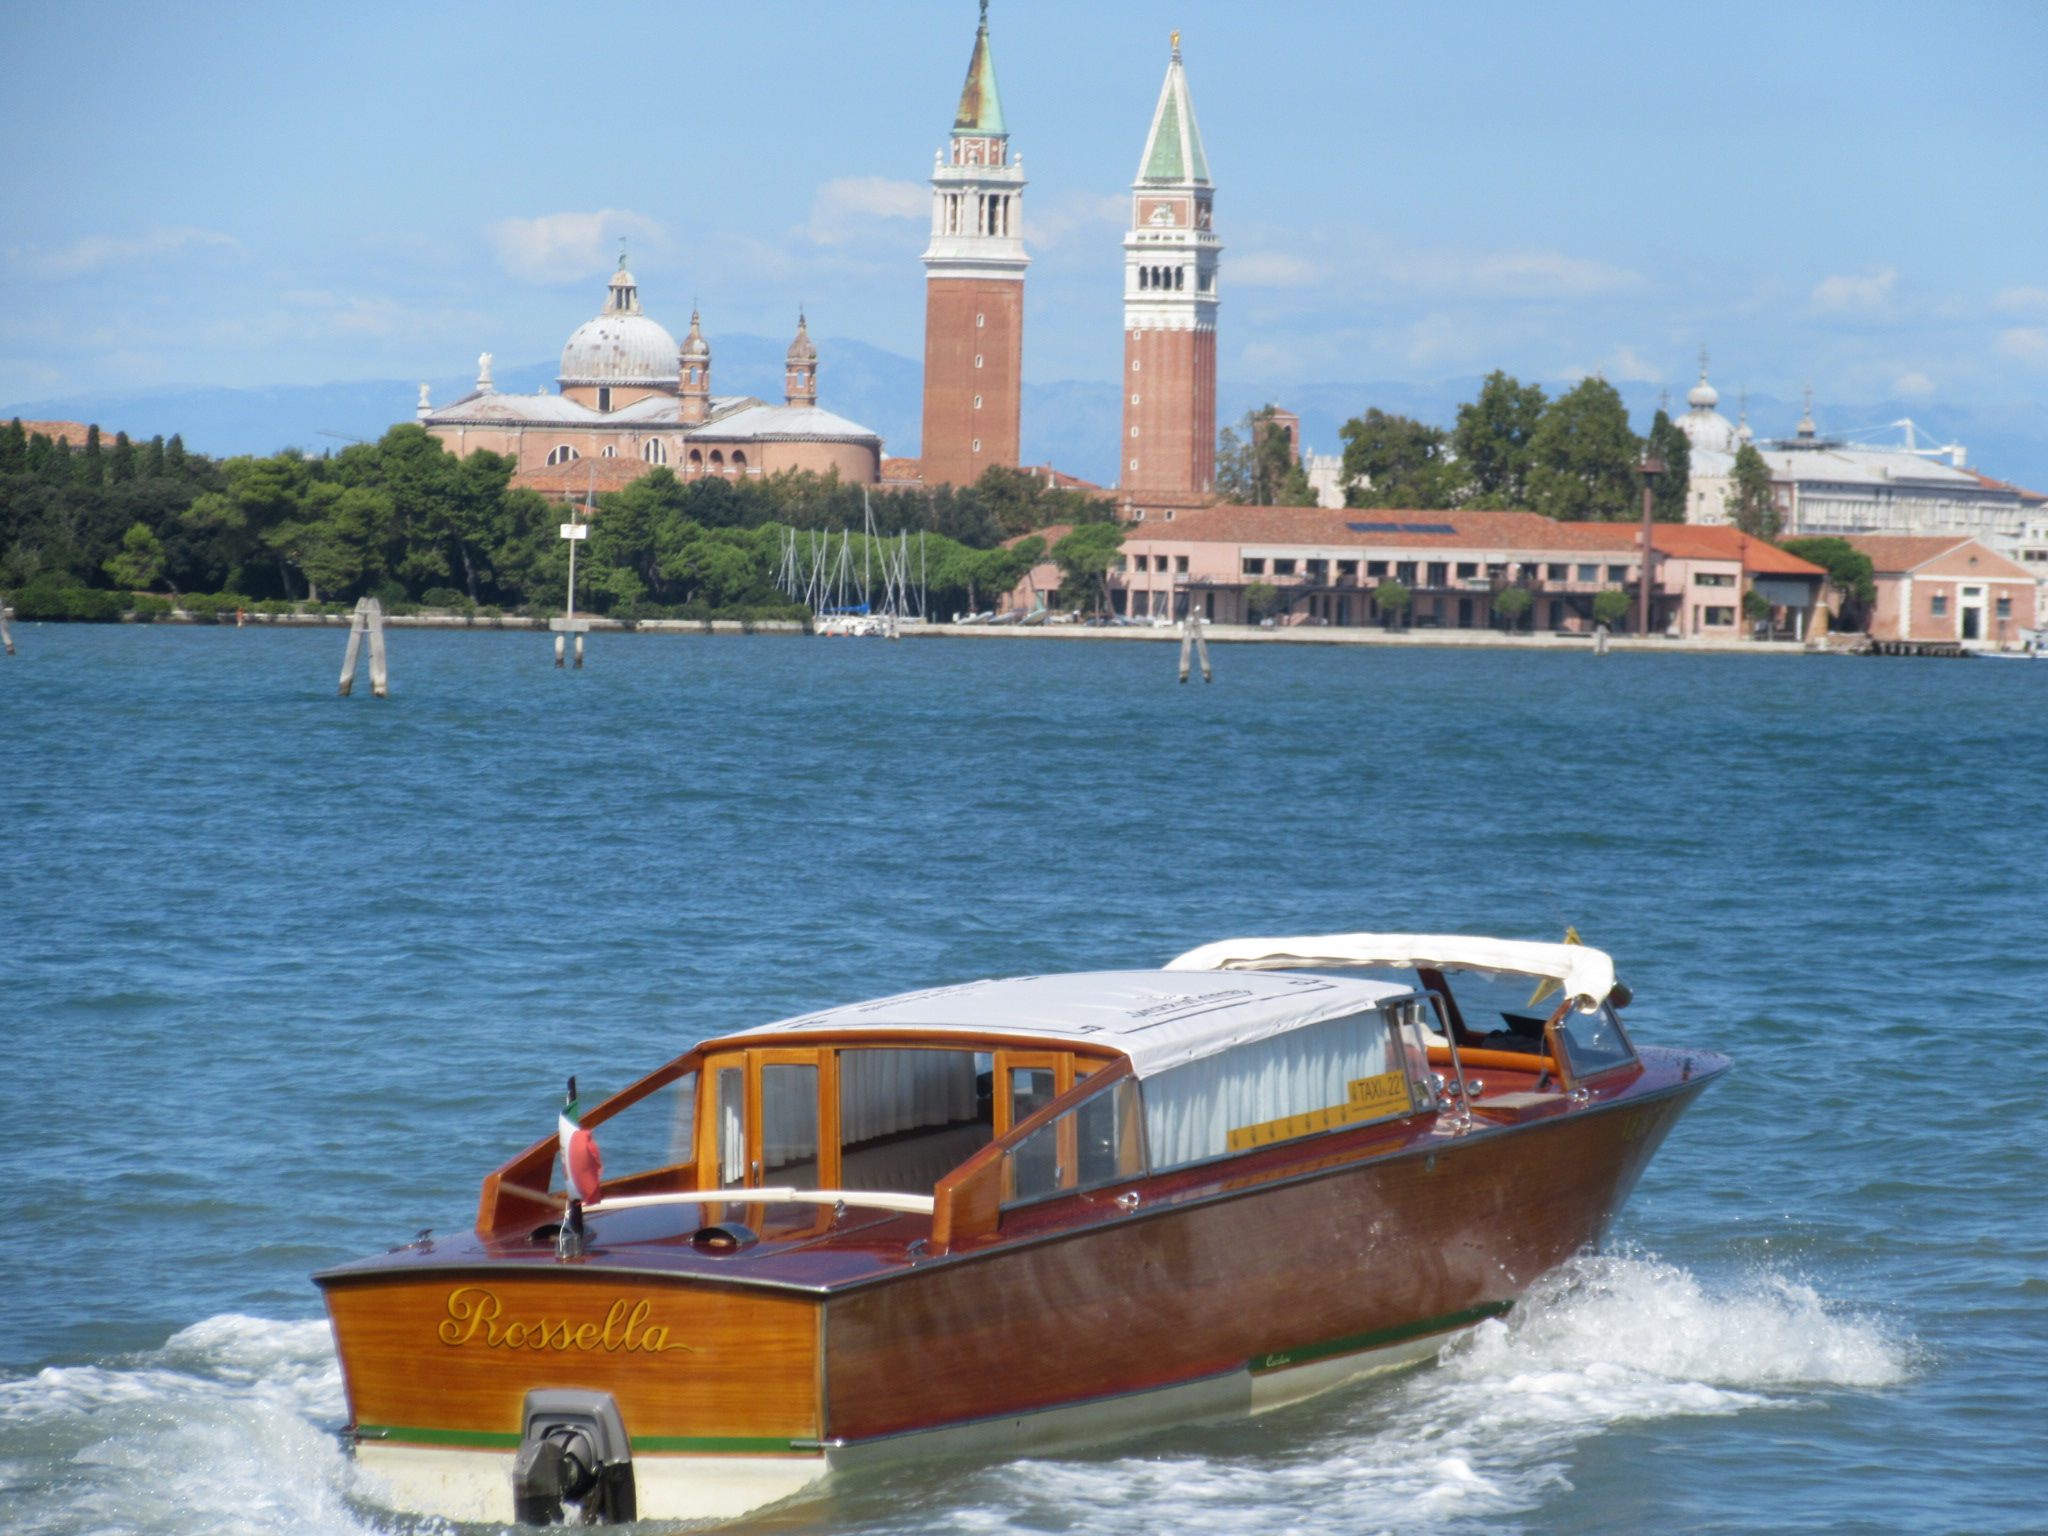 イタリア・ヴェネツィアに留学した際に撮影したボートの写真です。